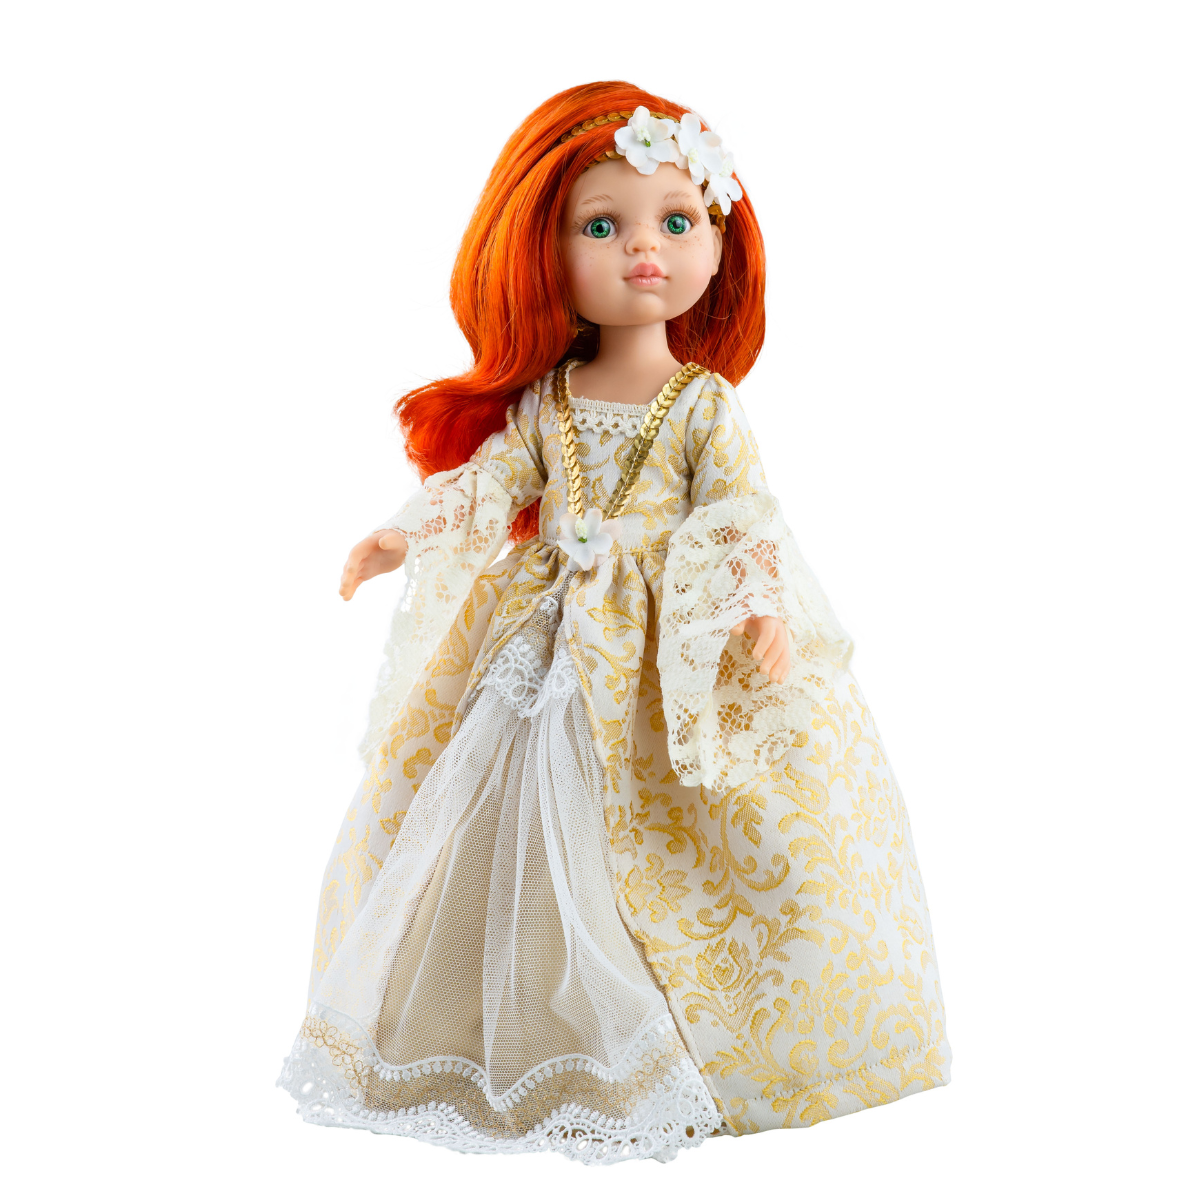 Ręcznie wykonana lalka bobas Paola Reina 32 cm, idealna do przytulania i zabawy, produkowana w Hiszpanii.